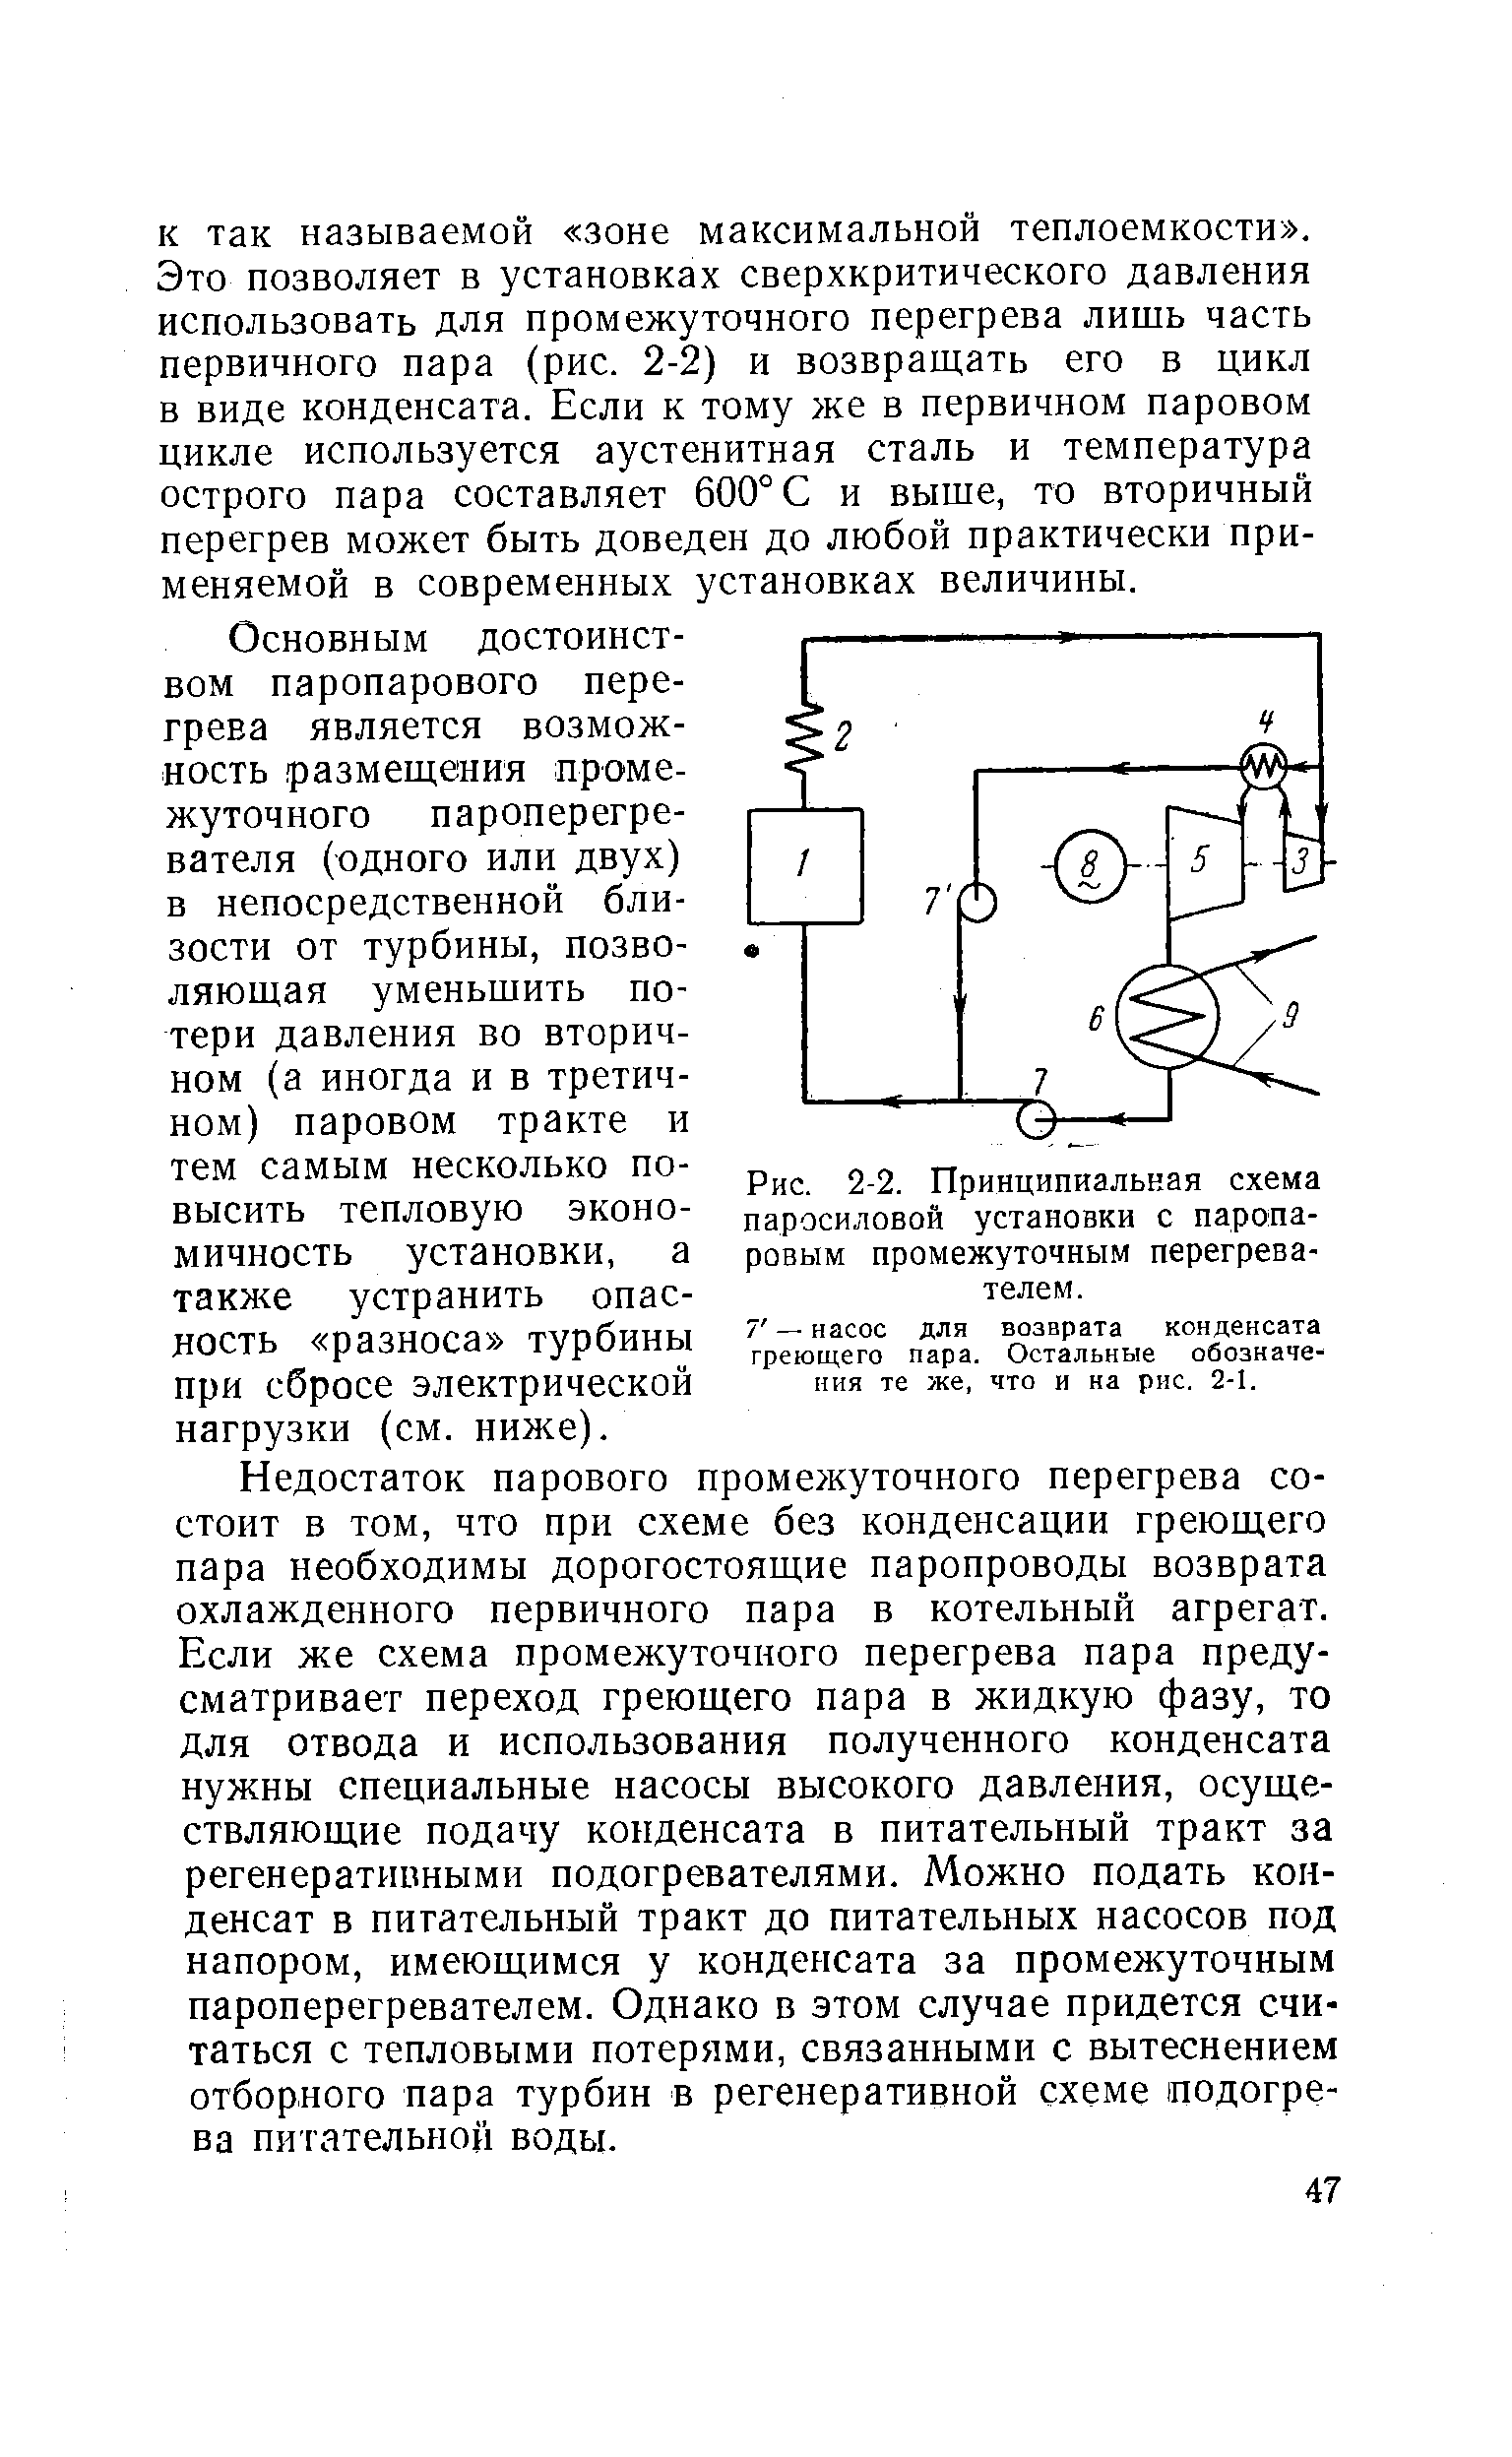 Рис. 2-2. Принципиальная схема паросиловой установки с паропаровым промежуточным перегревателем.
